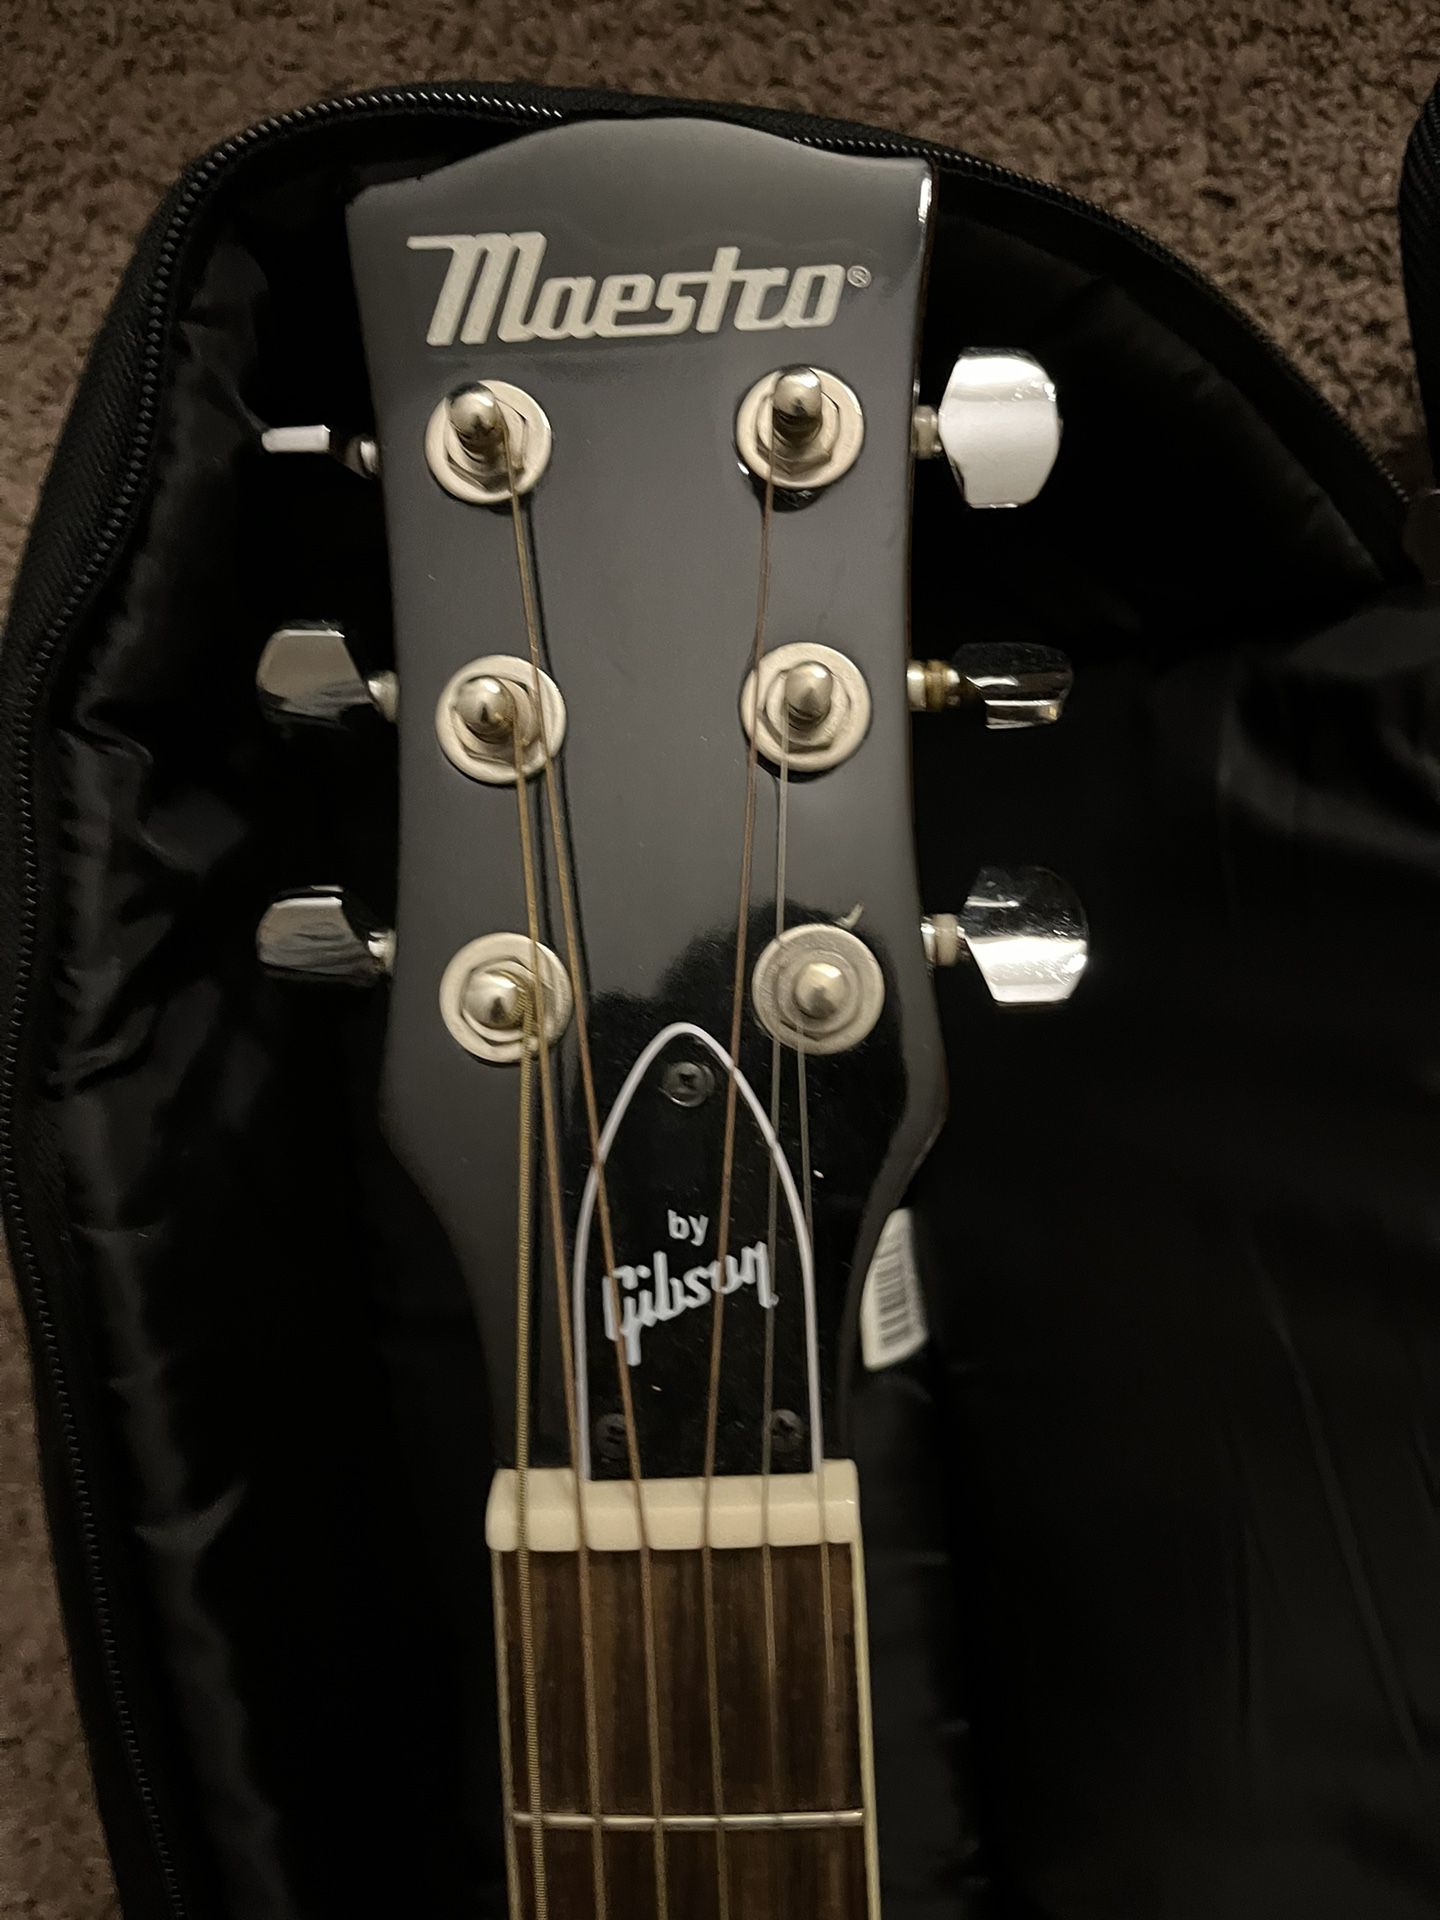 Maestro acoustic guitar